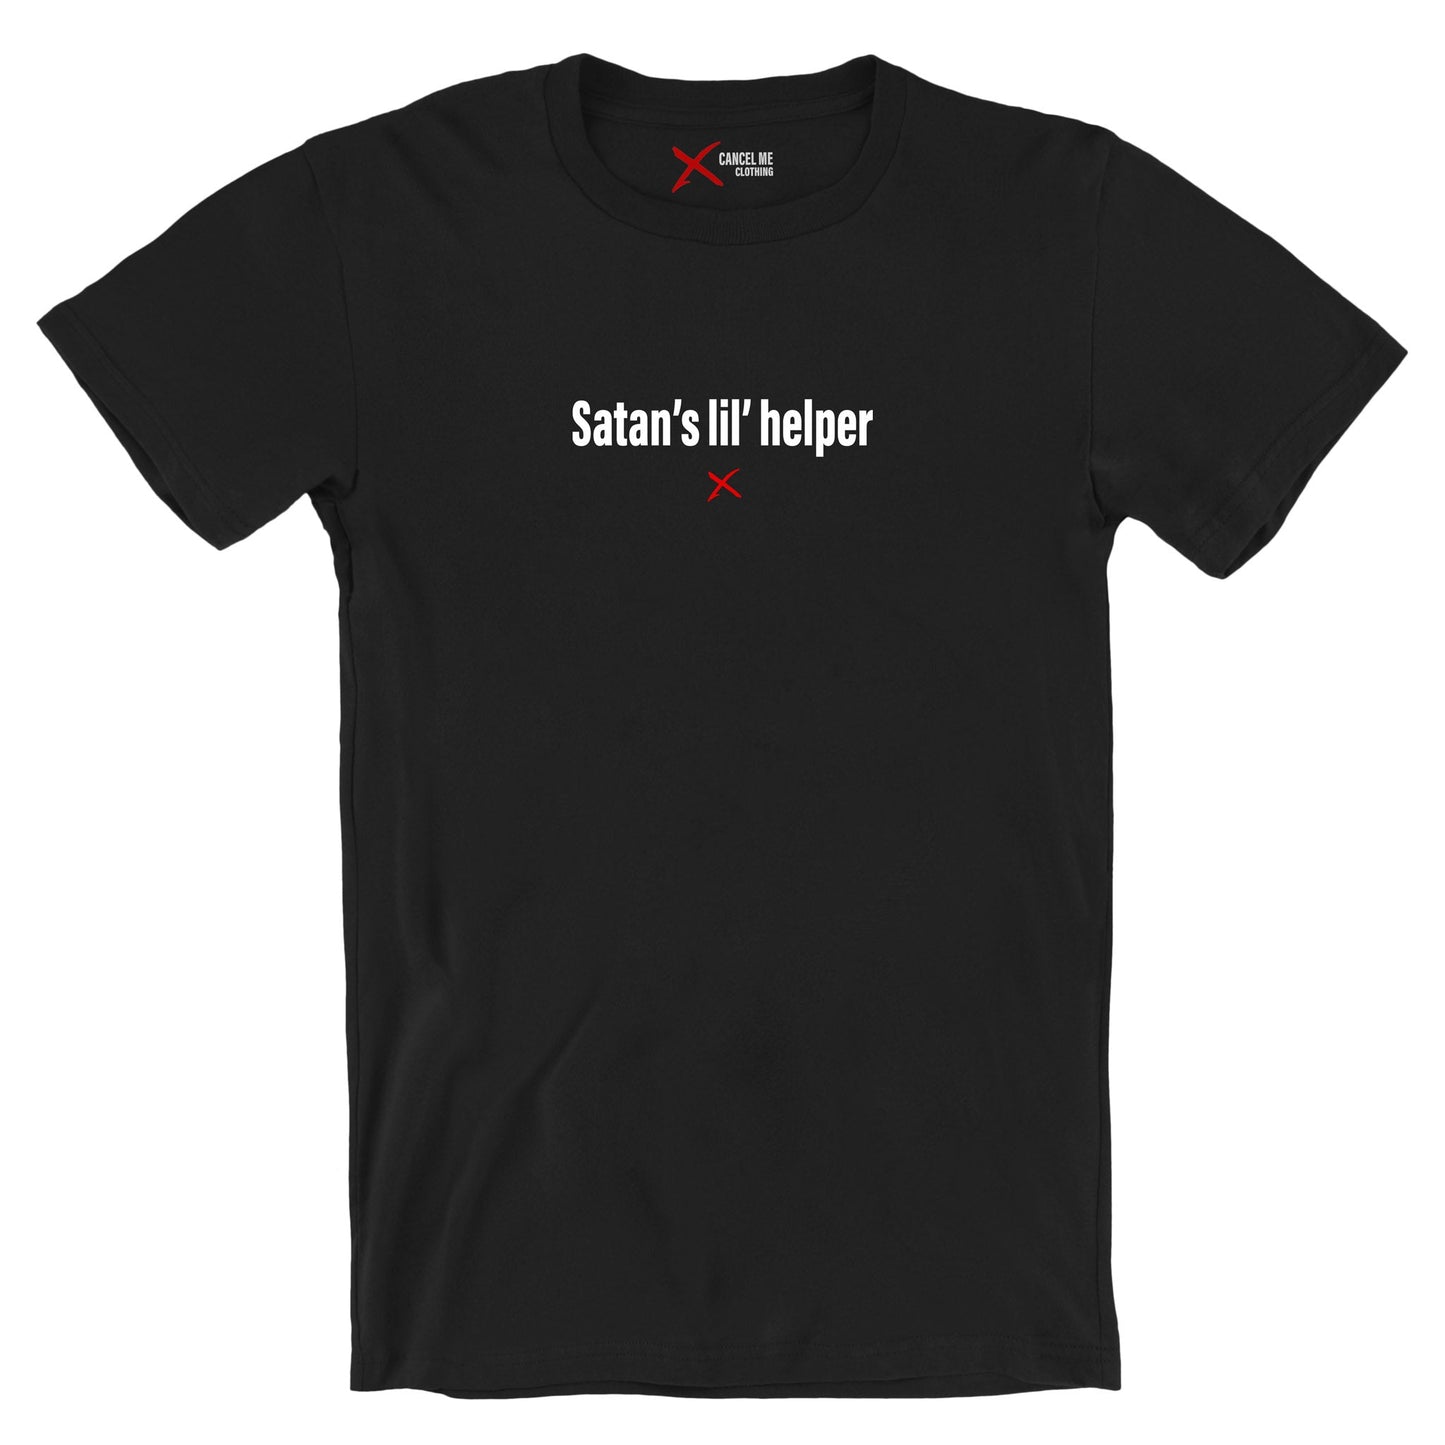 Satan's lil' helper - Shirt